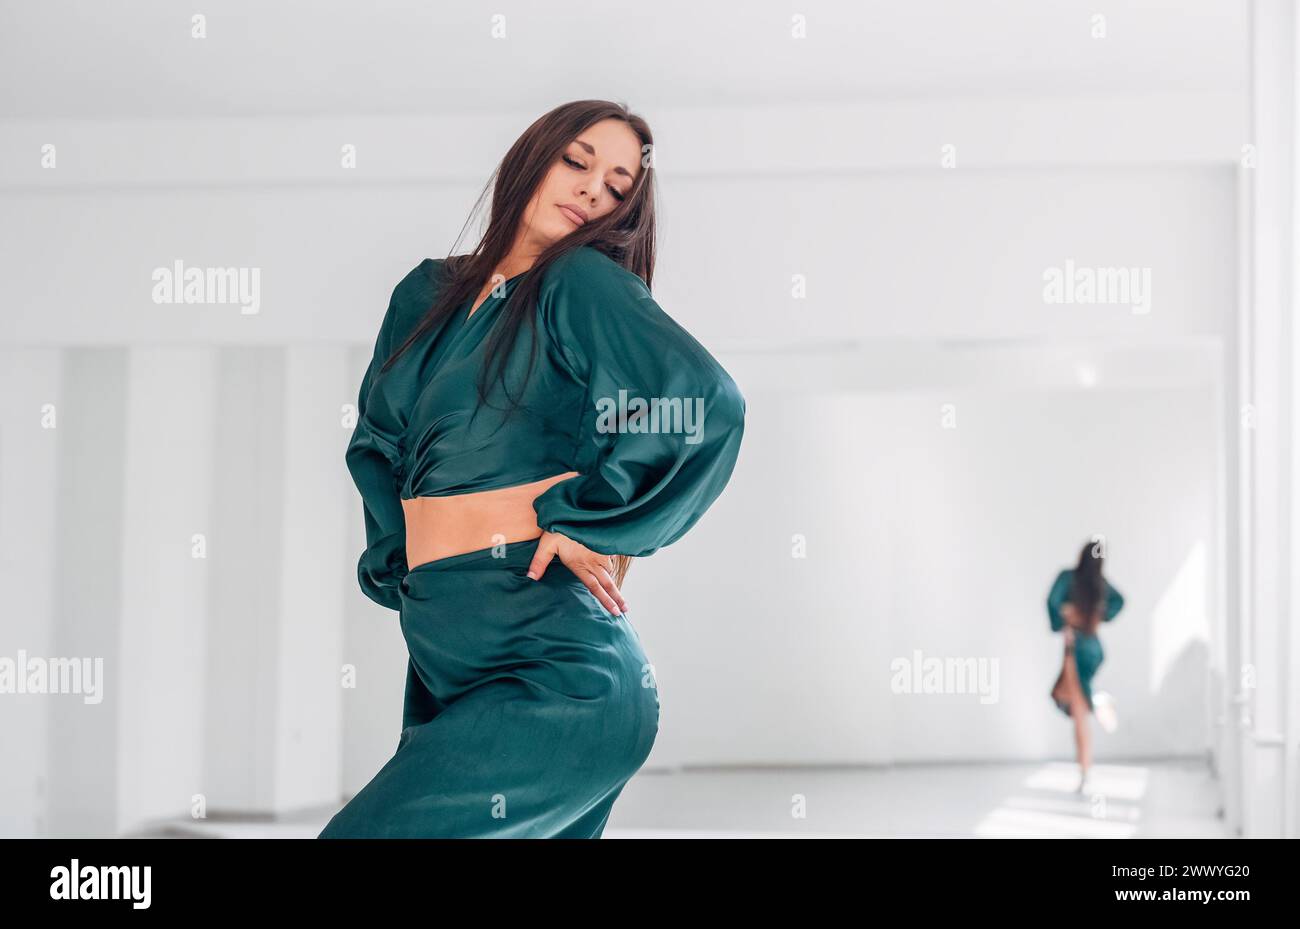 Portrait de femme gracieuse habillée robe de danse latine verte faisant des pas de danse élégants dans le grand hall avec grand mur miroir. Expressions des gens pendant la danse Banque D'Images